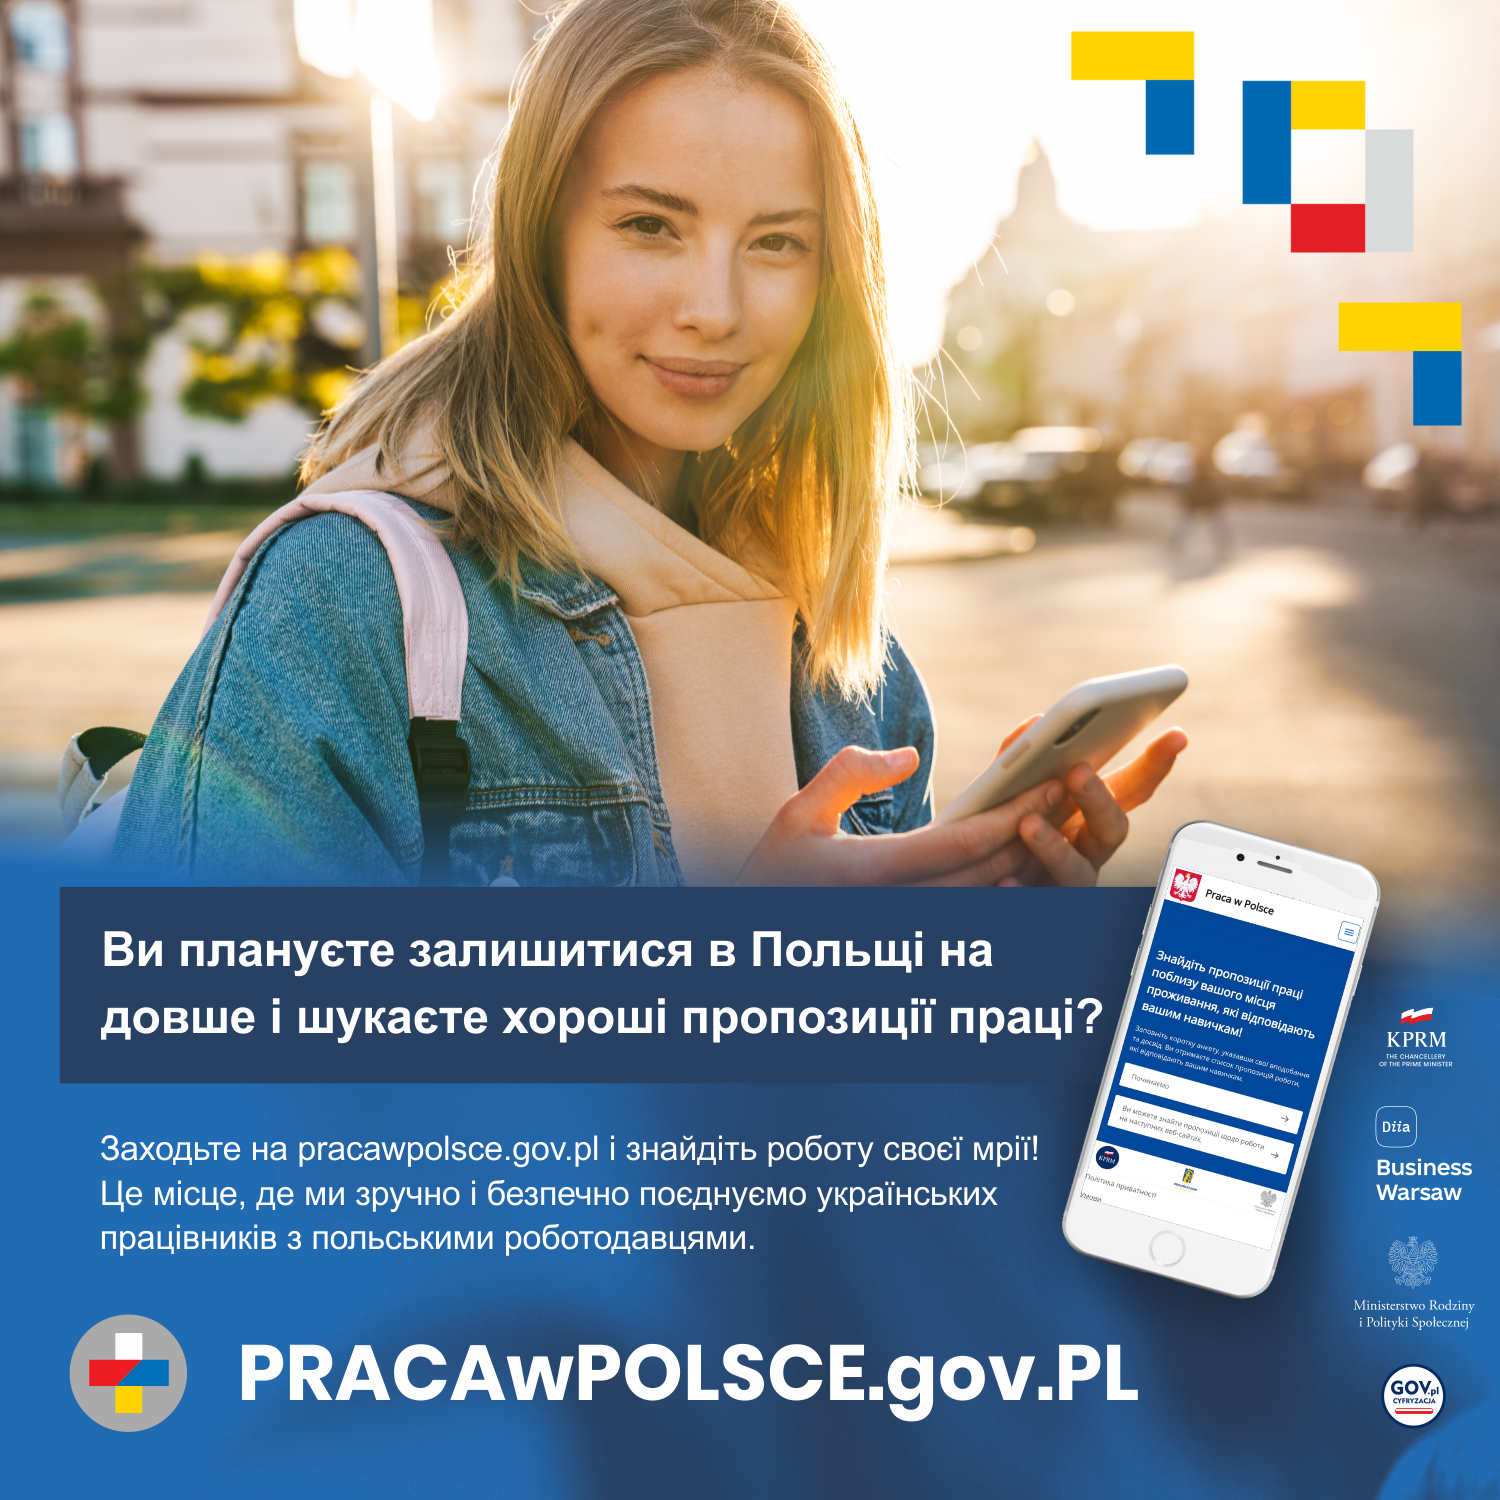 Plakat promujący nową aplikację do poszukiwania pracy przez uchodźców z Ukrainy.